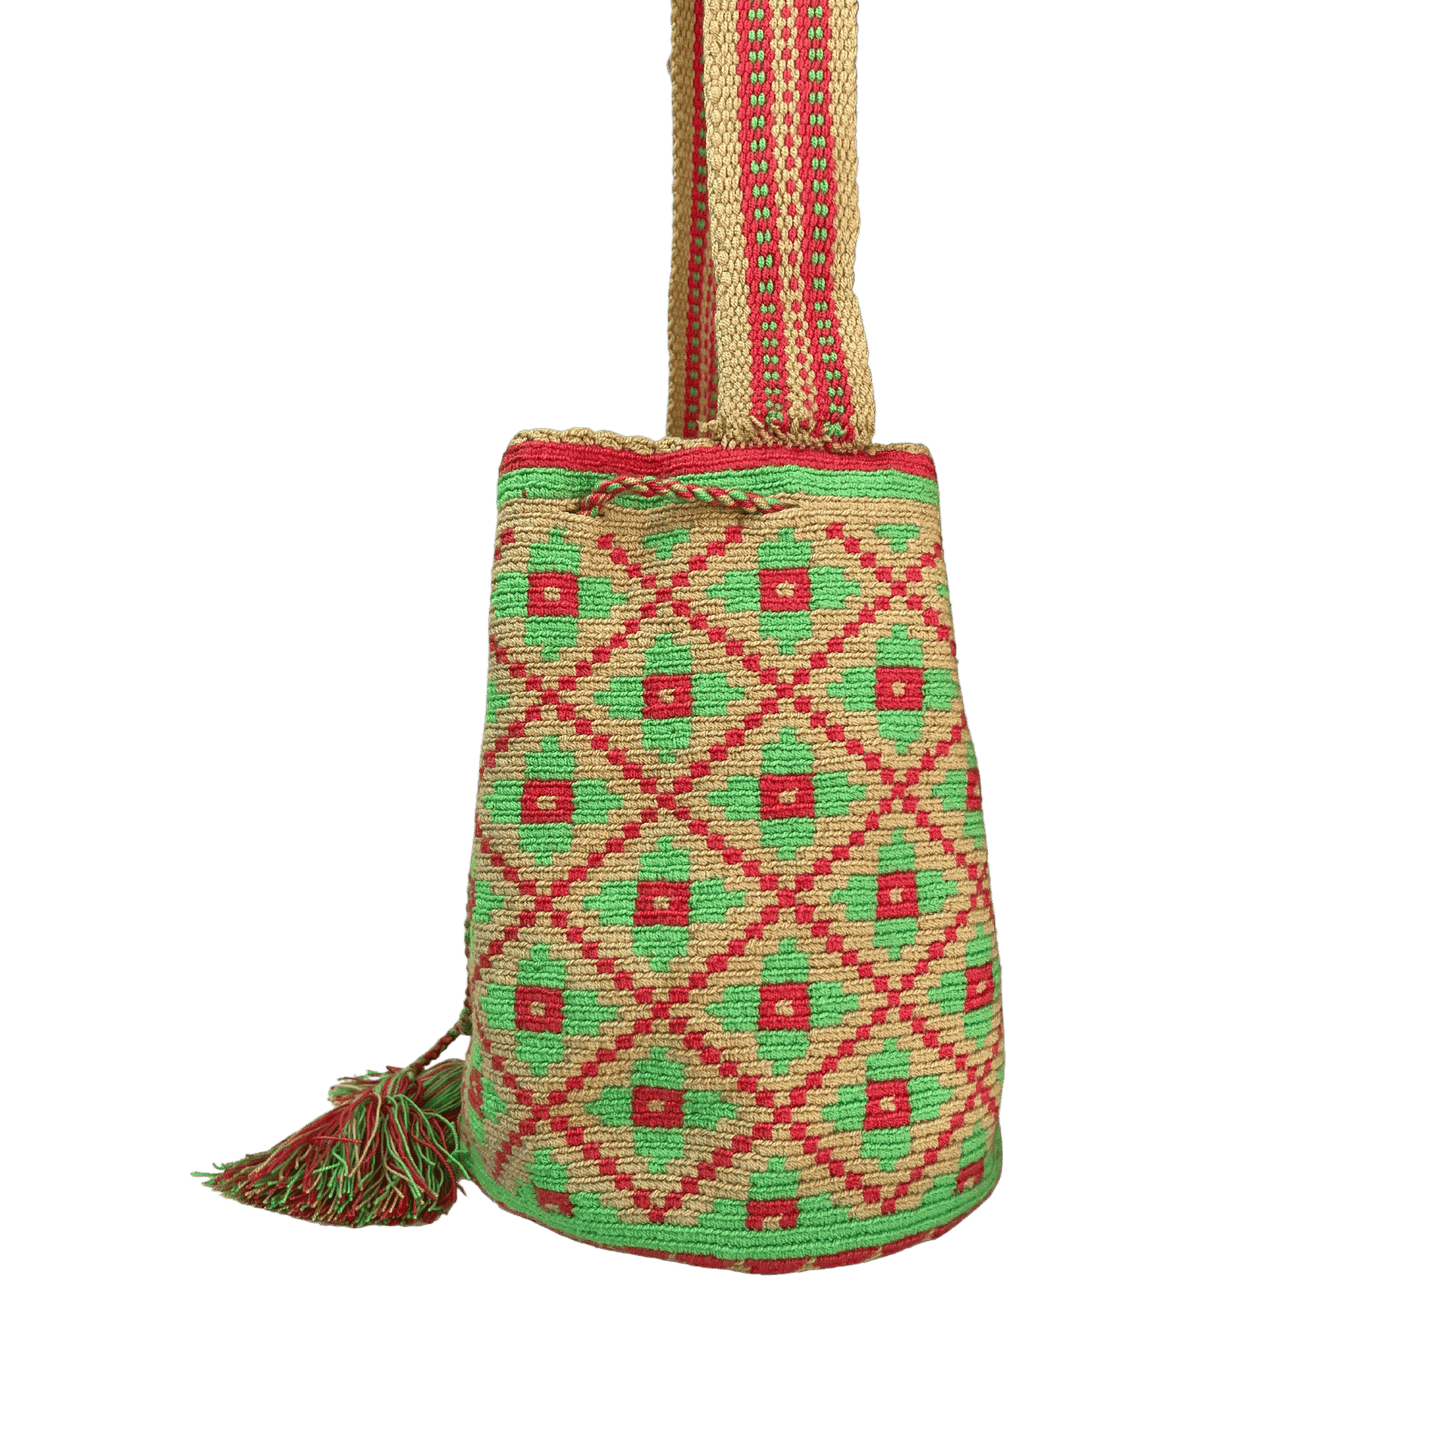 Mochila wayuu tejida a una hebra en crochet con diseño de flores en colores rojo y verde enmarcadas en rombos